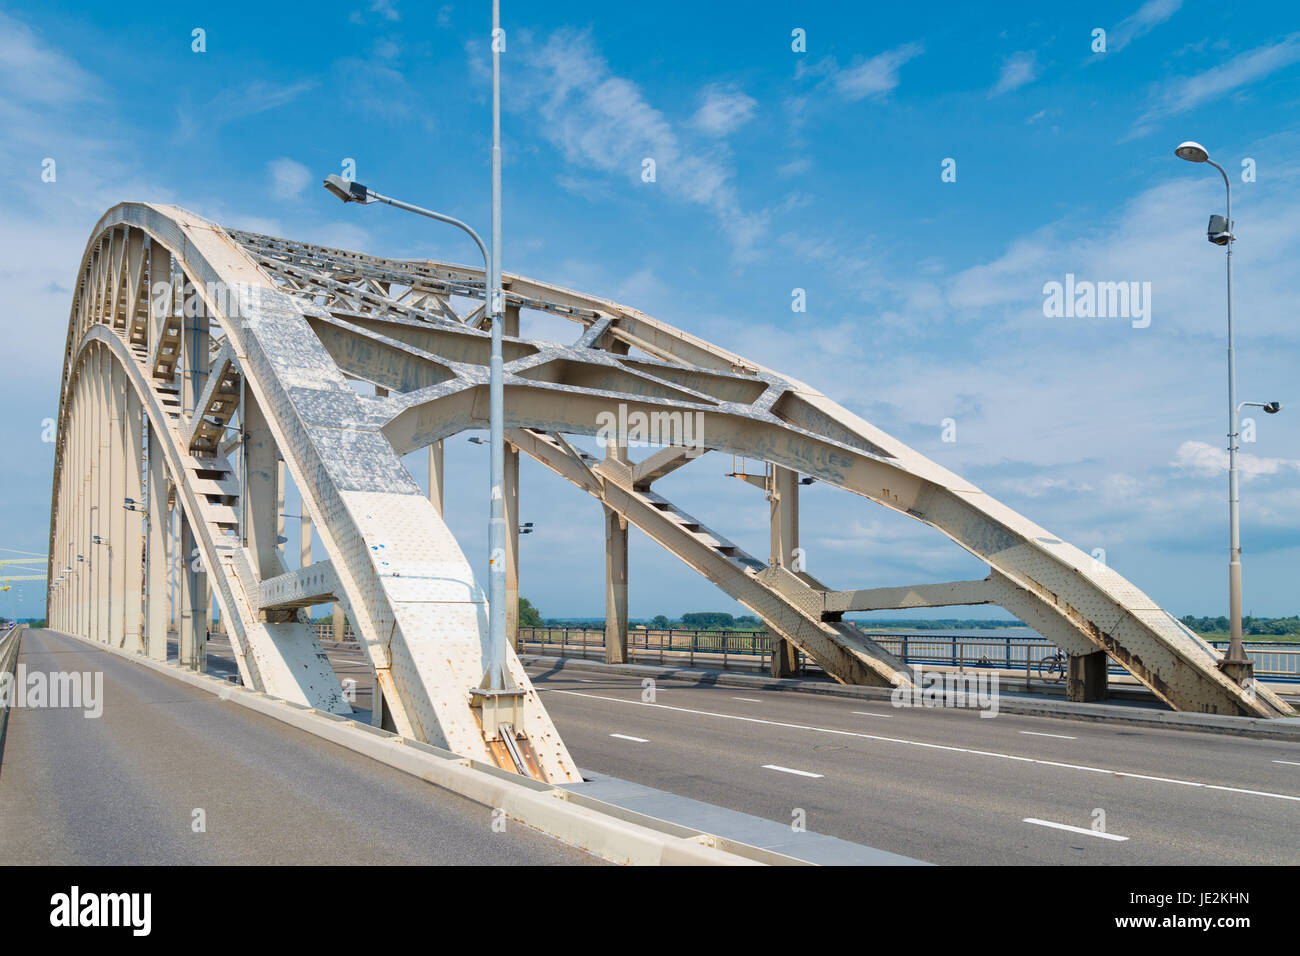 the Waal bridge crossing the Waal river at Nijmegen, netherlands Stock Photo